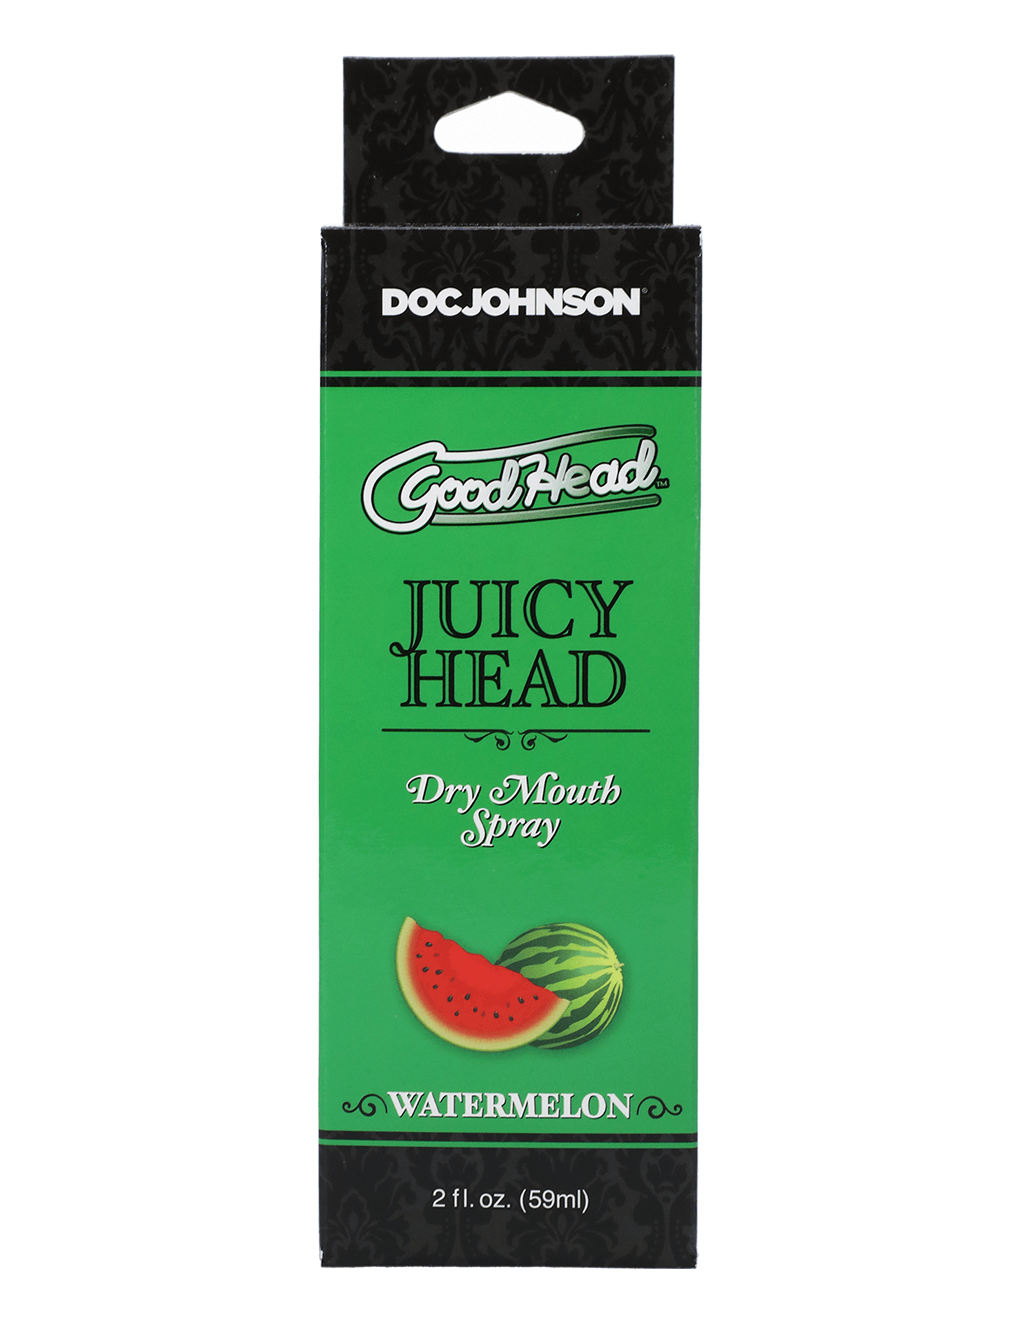 GoodHead Juicy Head - Watermelon - Box